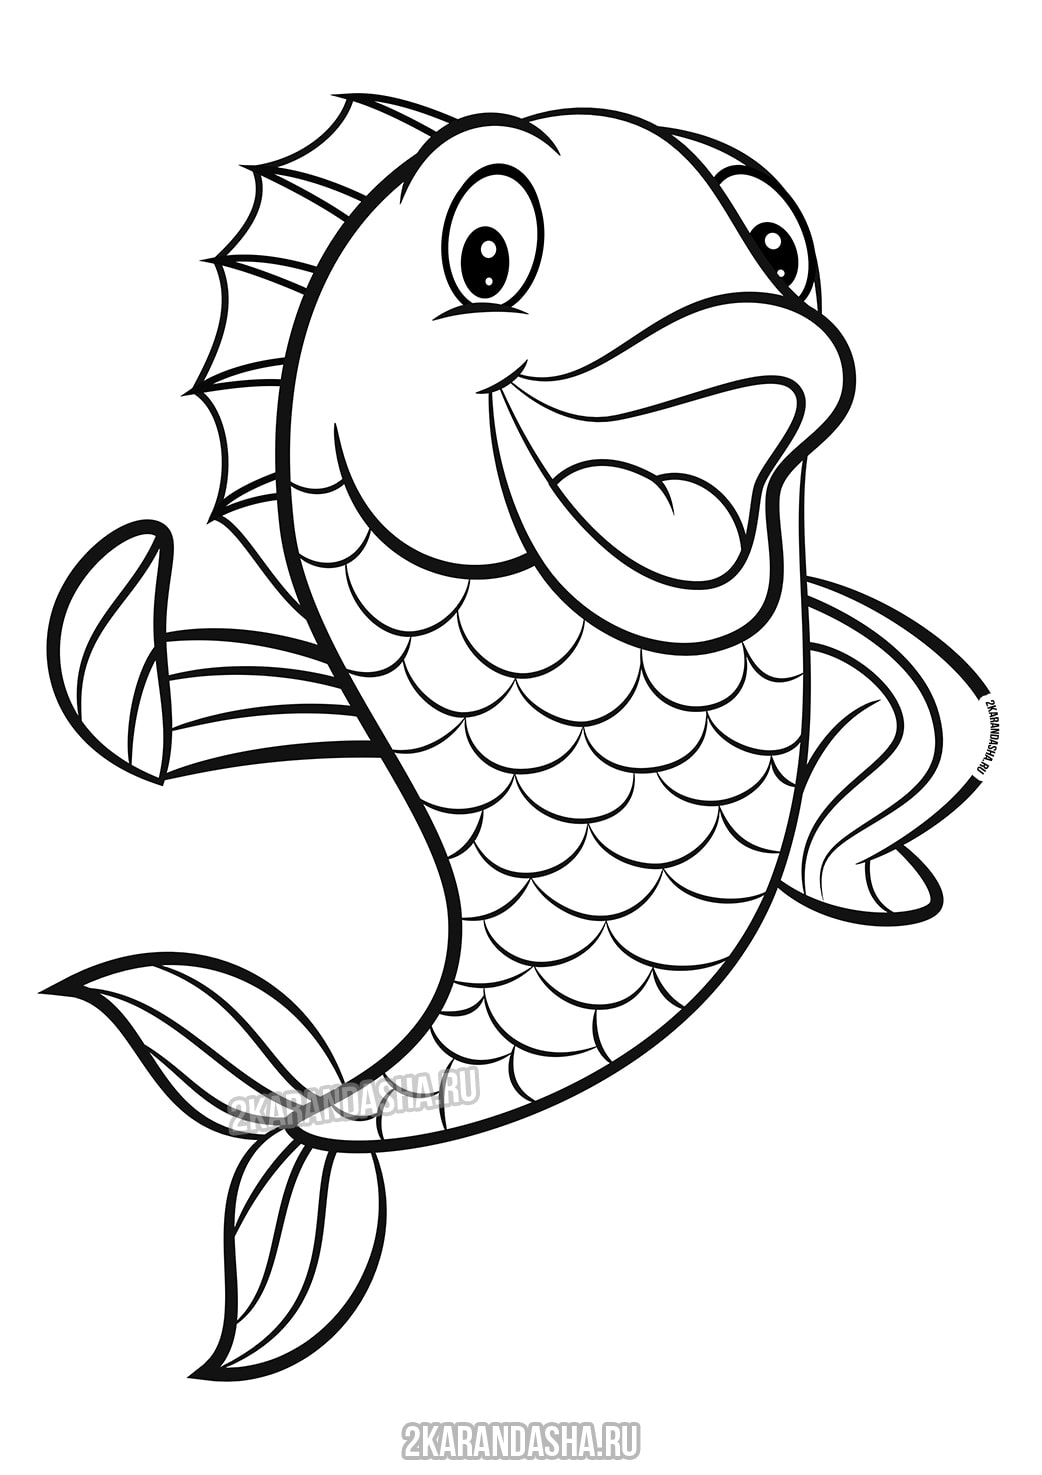 Распечатать раскраску яркая морская рыбка на А4